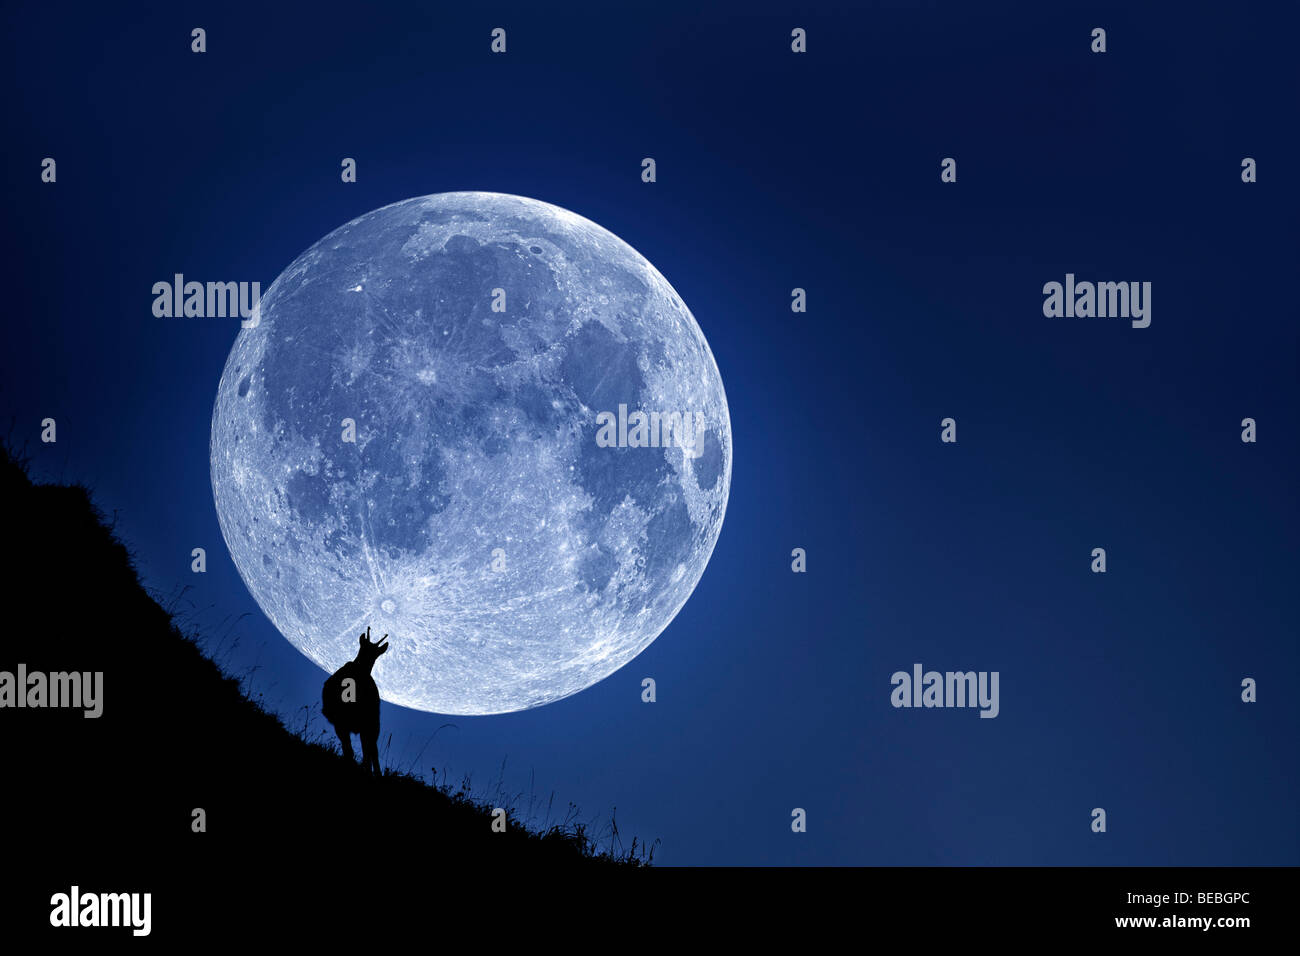 Un chamois' silhouette (Rupicapra rupicapra) sur un fond de pleine lune. Silhouette de chamois sur fond de pleine lune. Banque D'Images